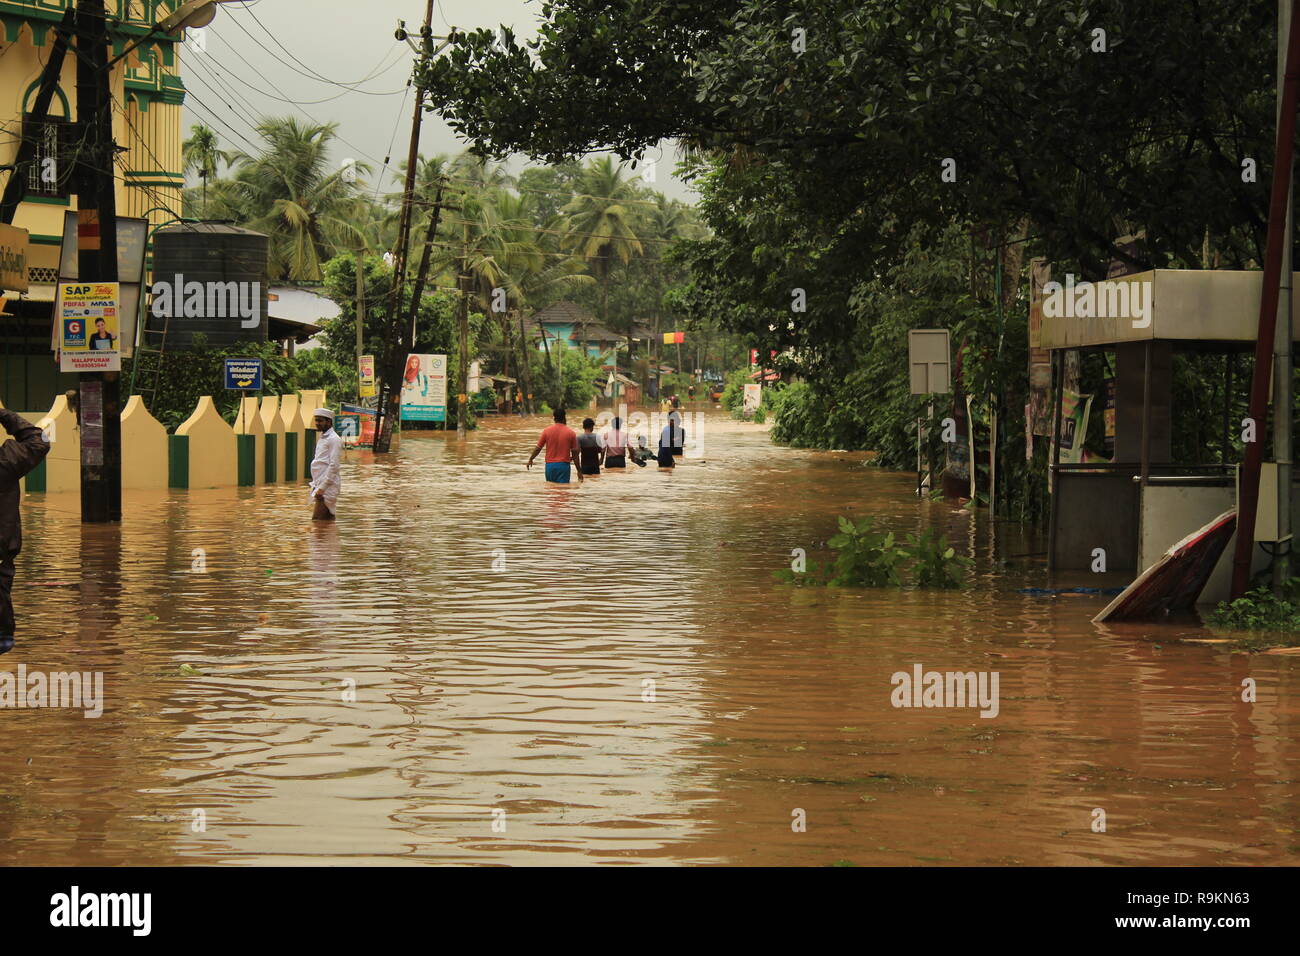 Menschen waten durch Wasser während Kerala Flut 2018 entlang einer überfluteten Straße. Schwere Überschwemmungen im Süden Indiens. Stockfoto